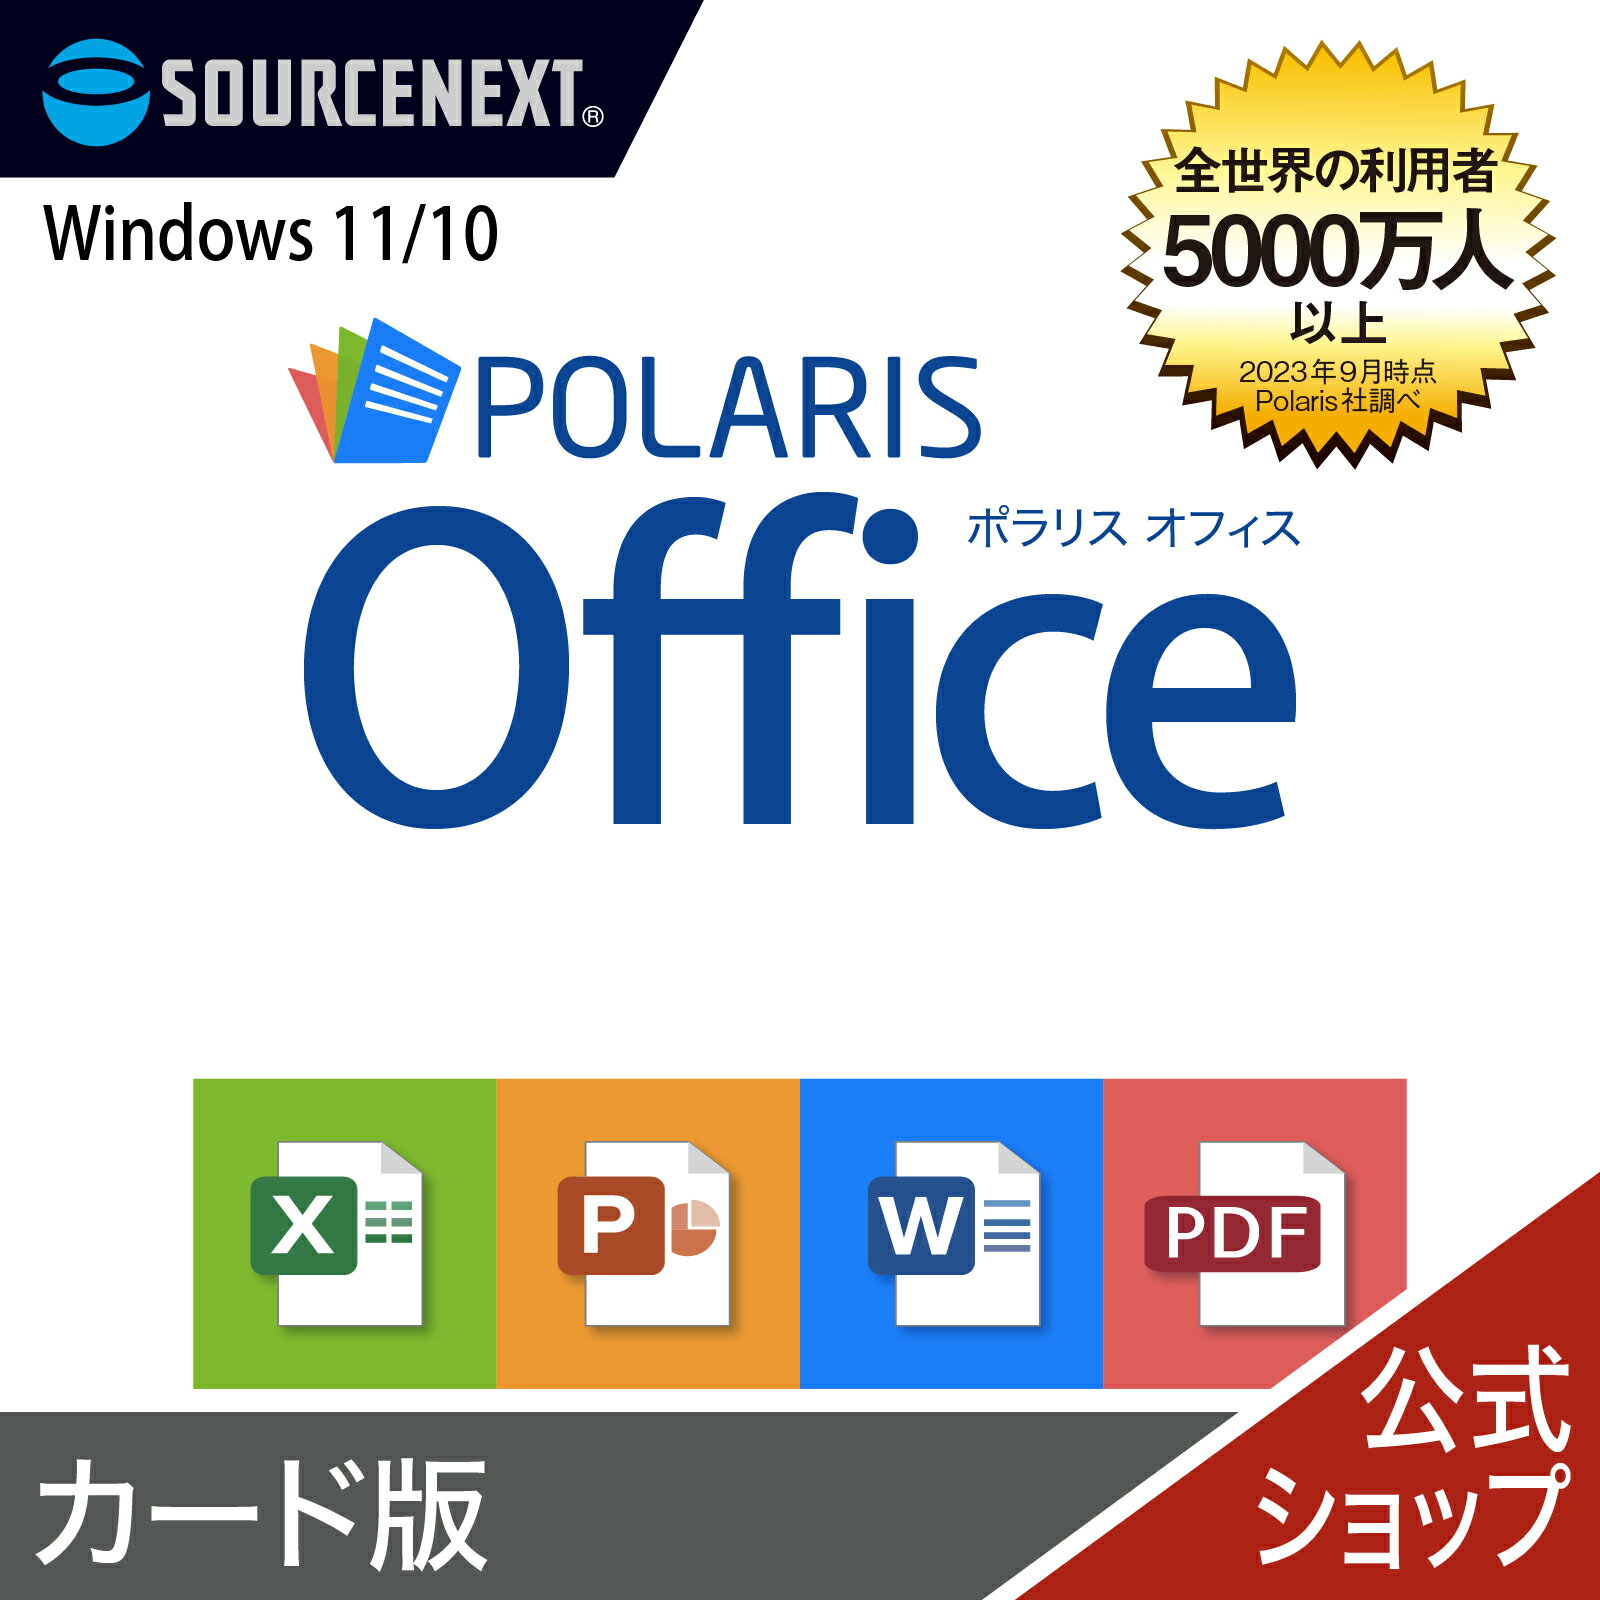 Polaris Office Windows用 オフィスソフト ポラリス Microsoft Office オフィス 互換性 Excel PowerPoint Word パワーポイント エクセルソフト ワード